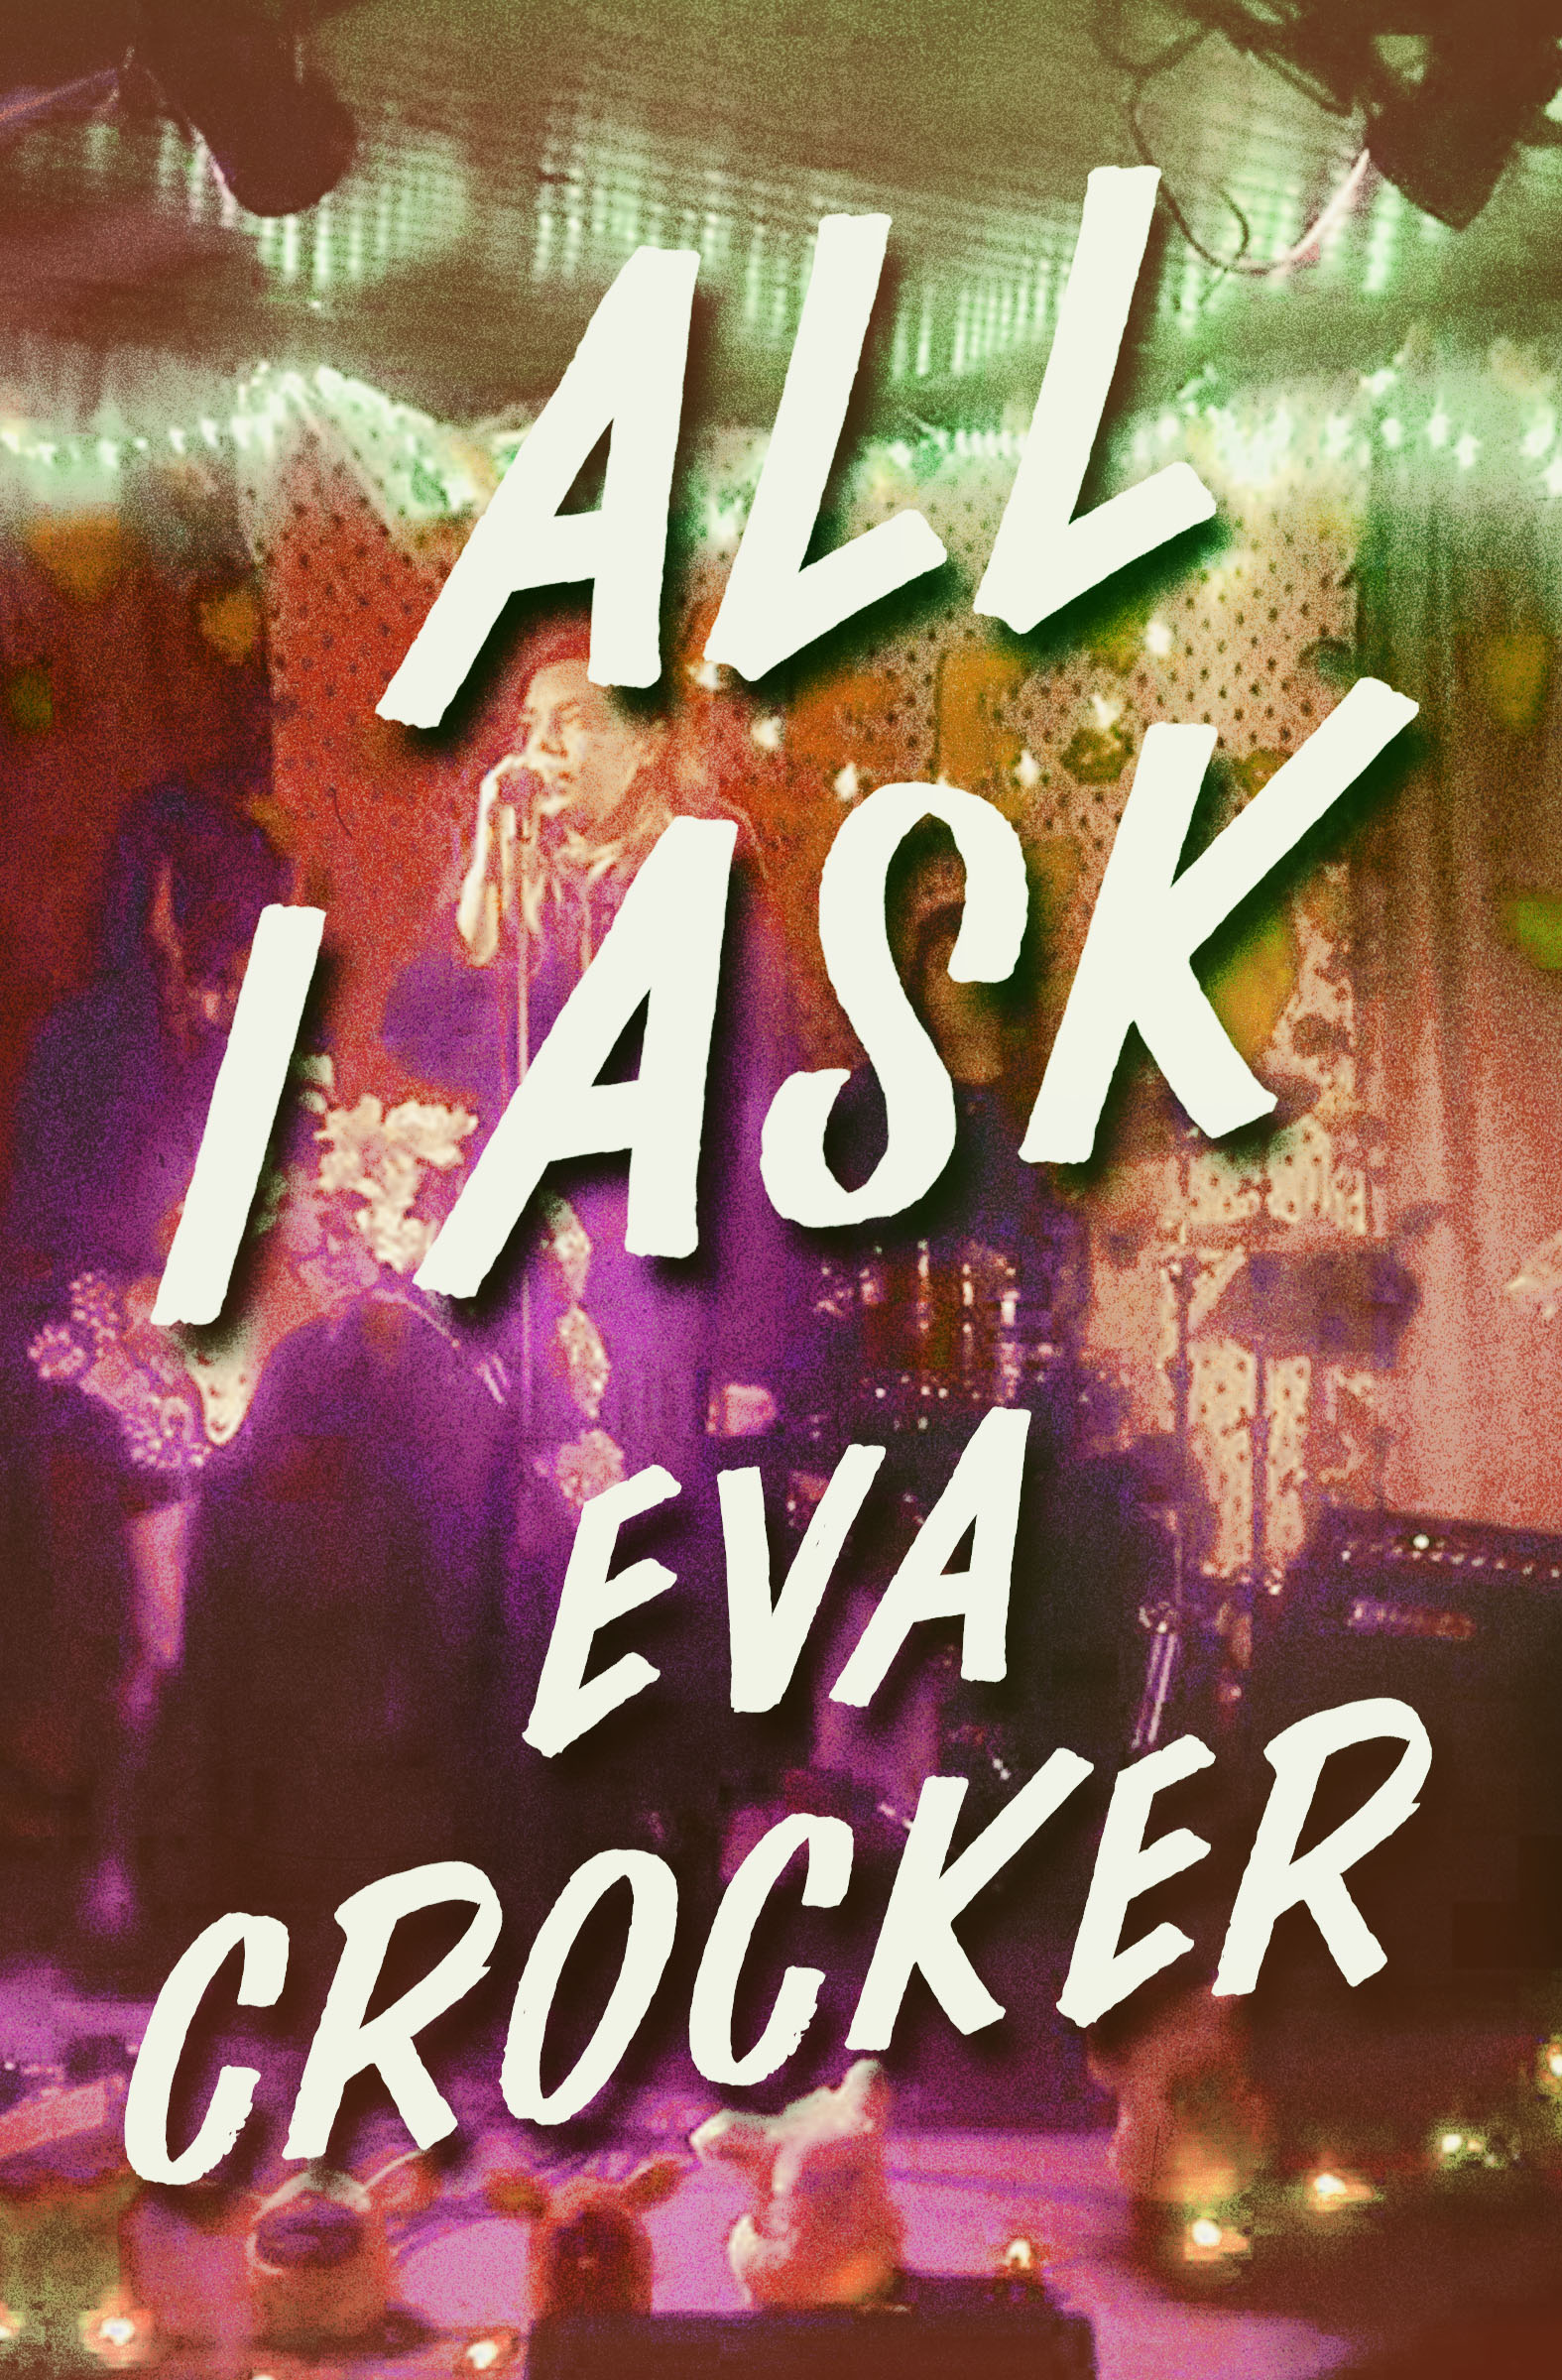 Crocker, Eva - All I Ask